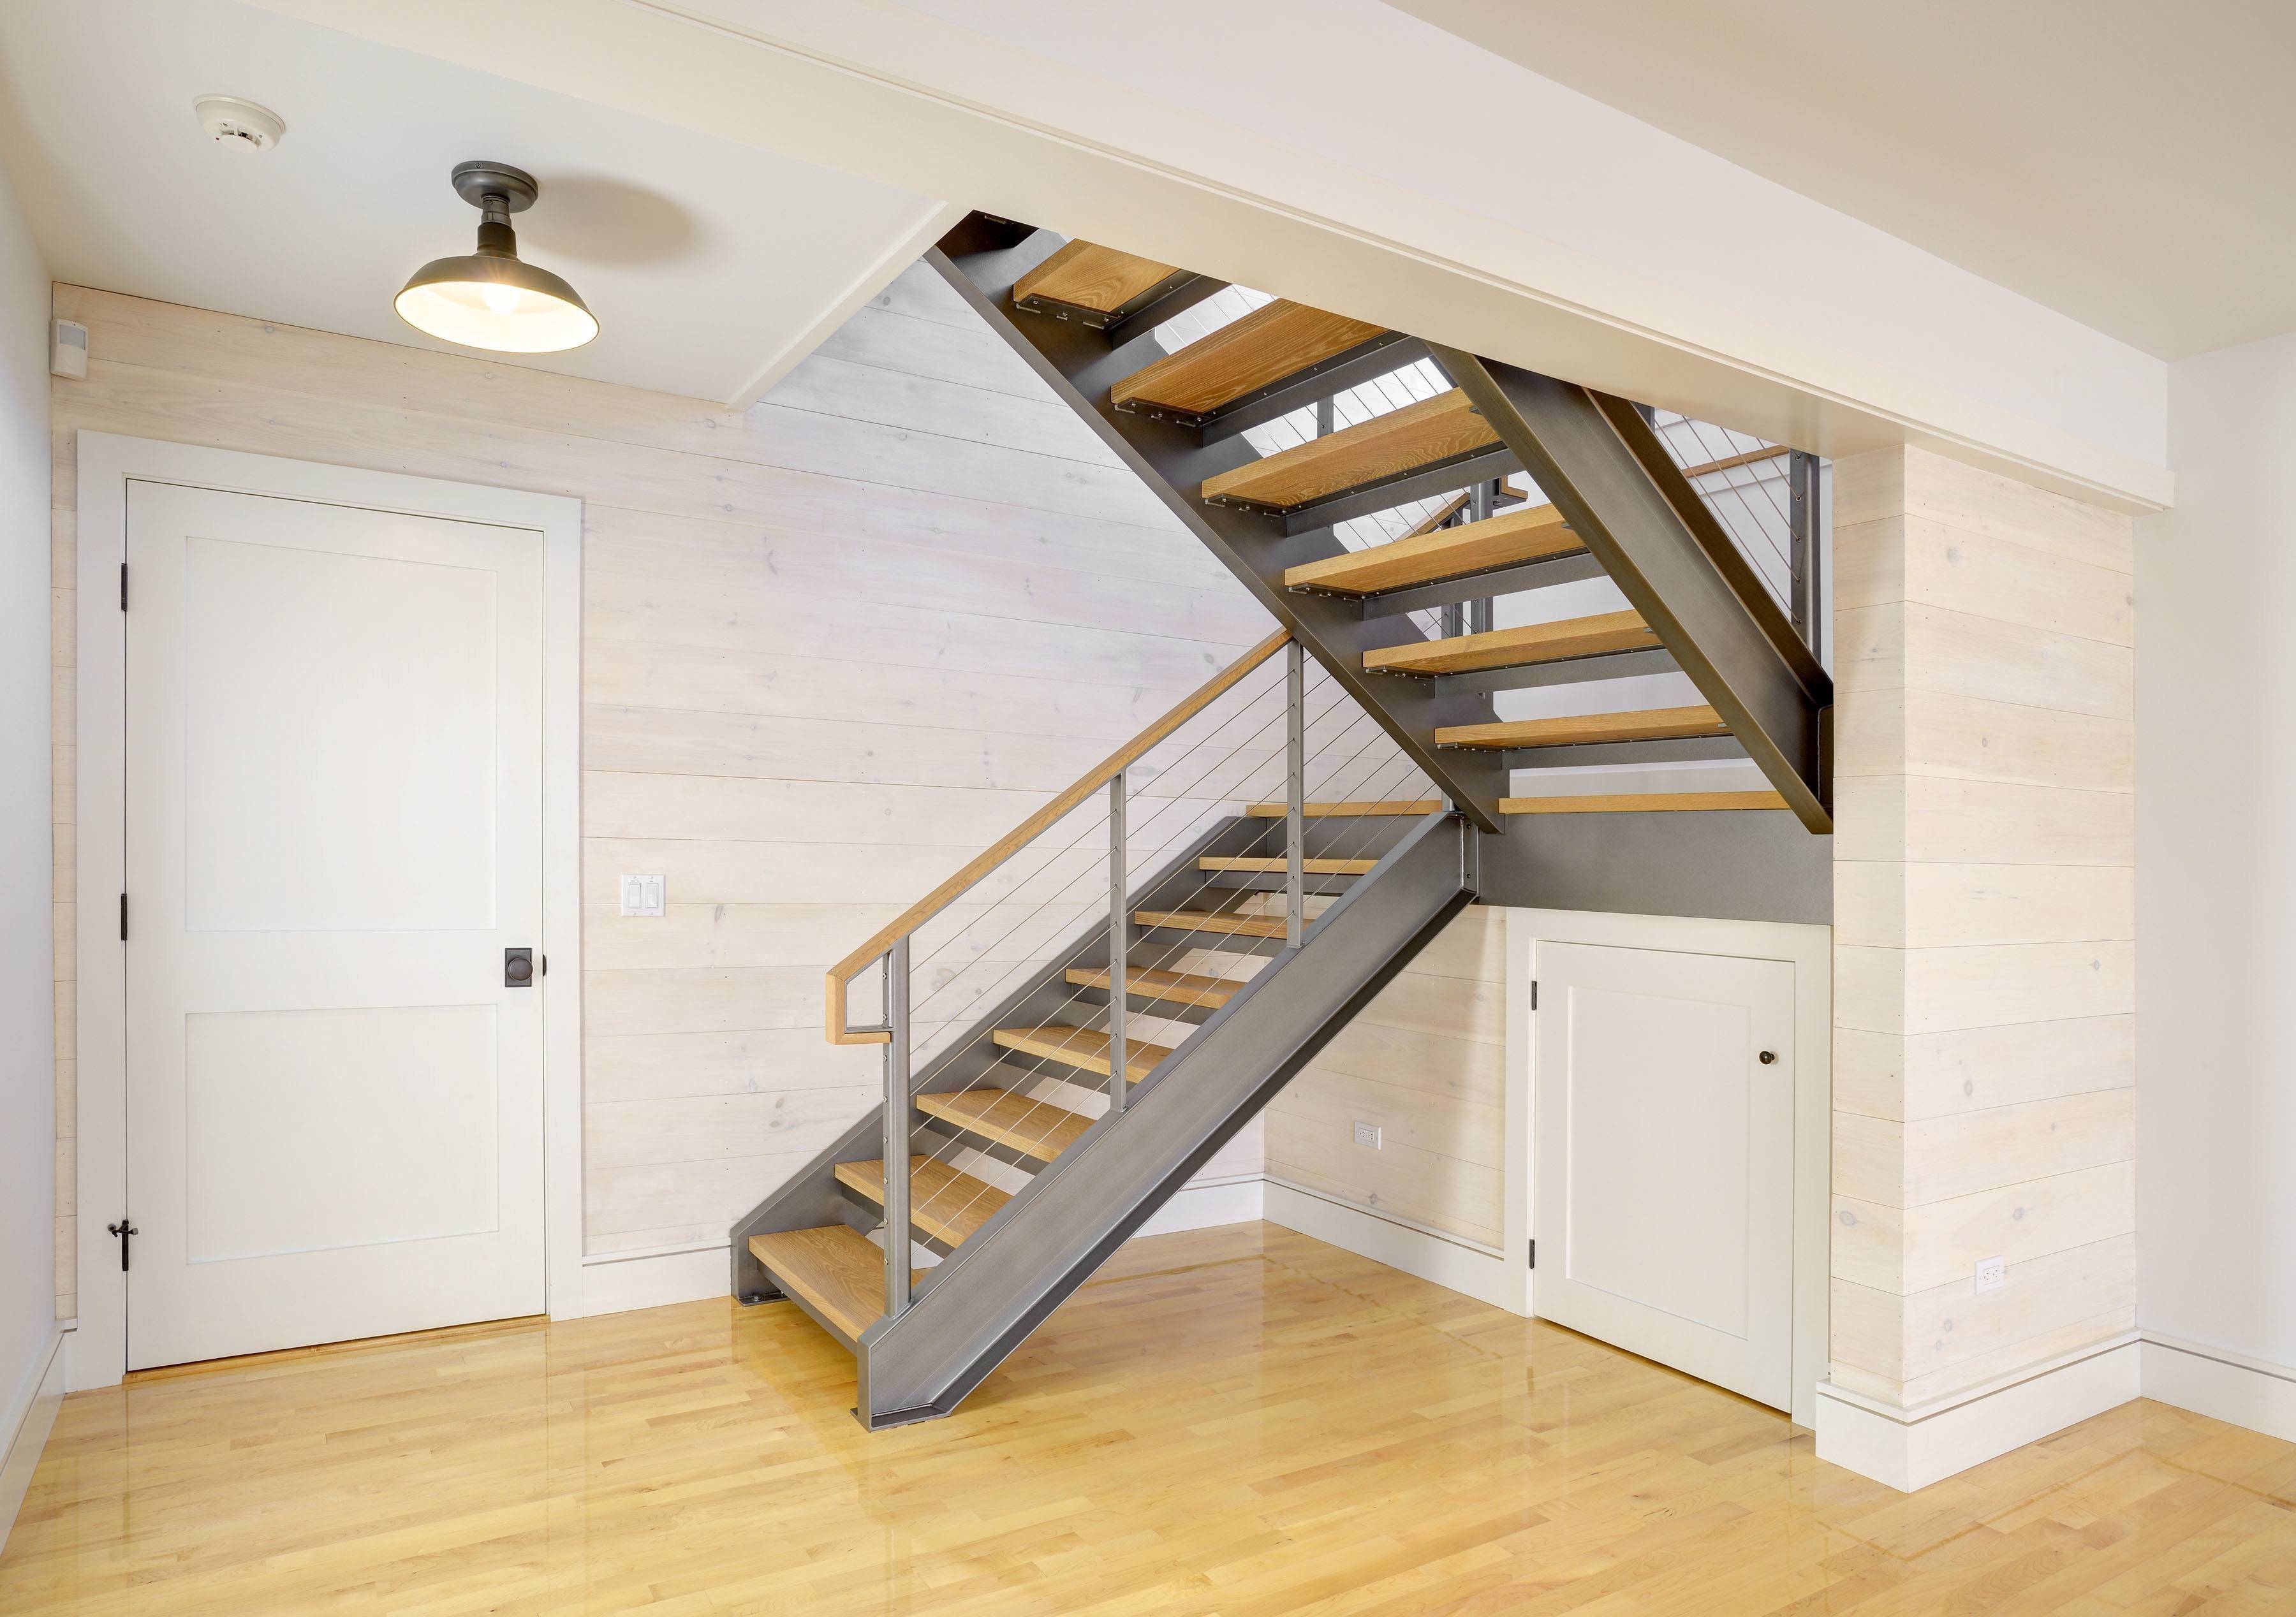 См лестниц. Мансардная лестница двухмаршевая. Лестница в доме на второй этаж двухмаршевая. Двухмаршевая лестница на мансардный этаж. Лестница деревянная двухмаршевая.